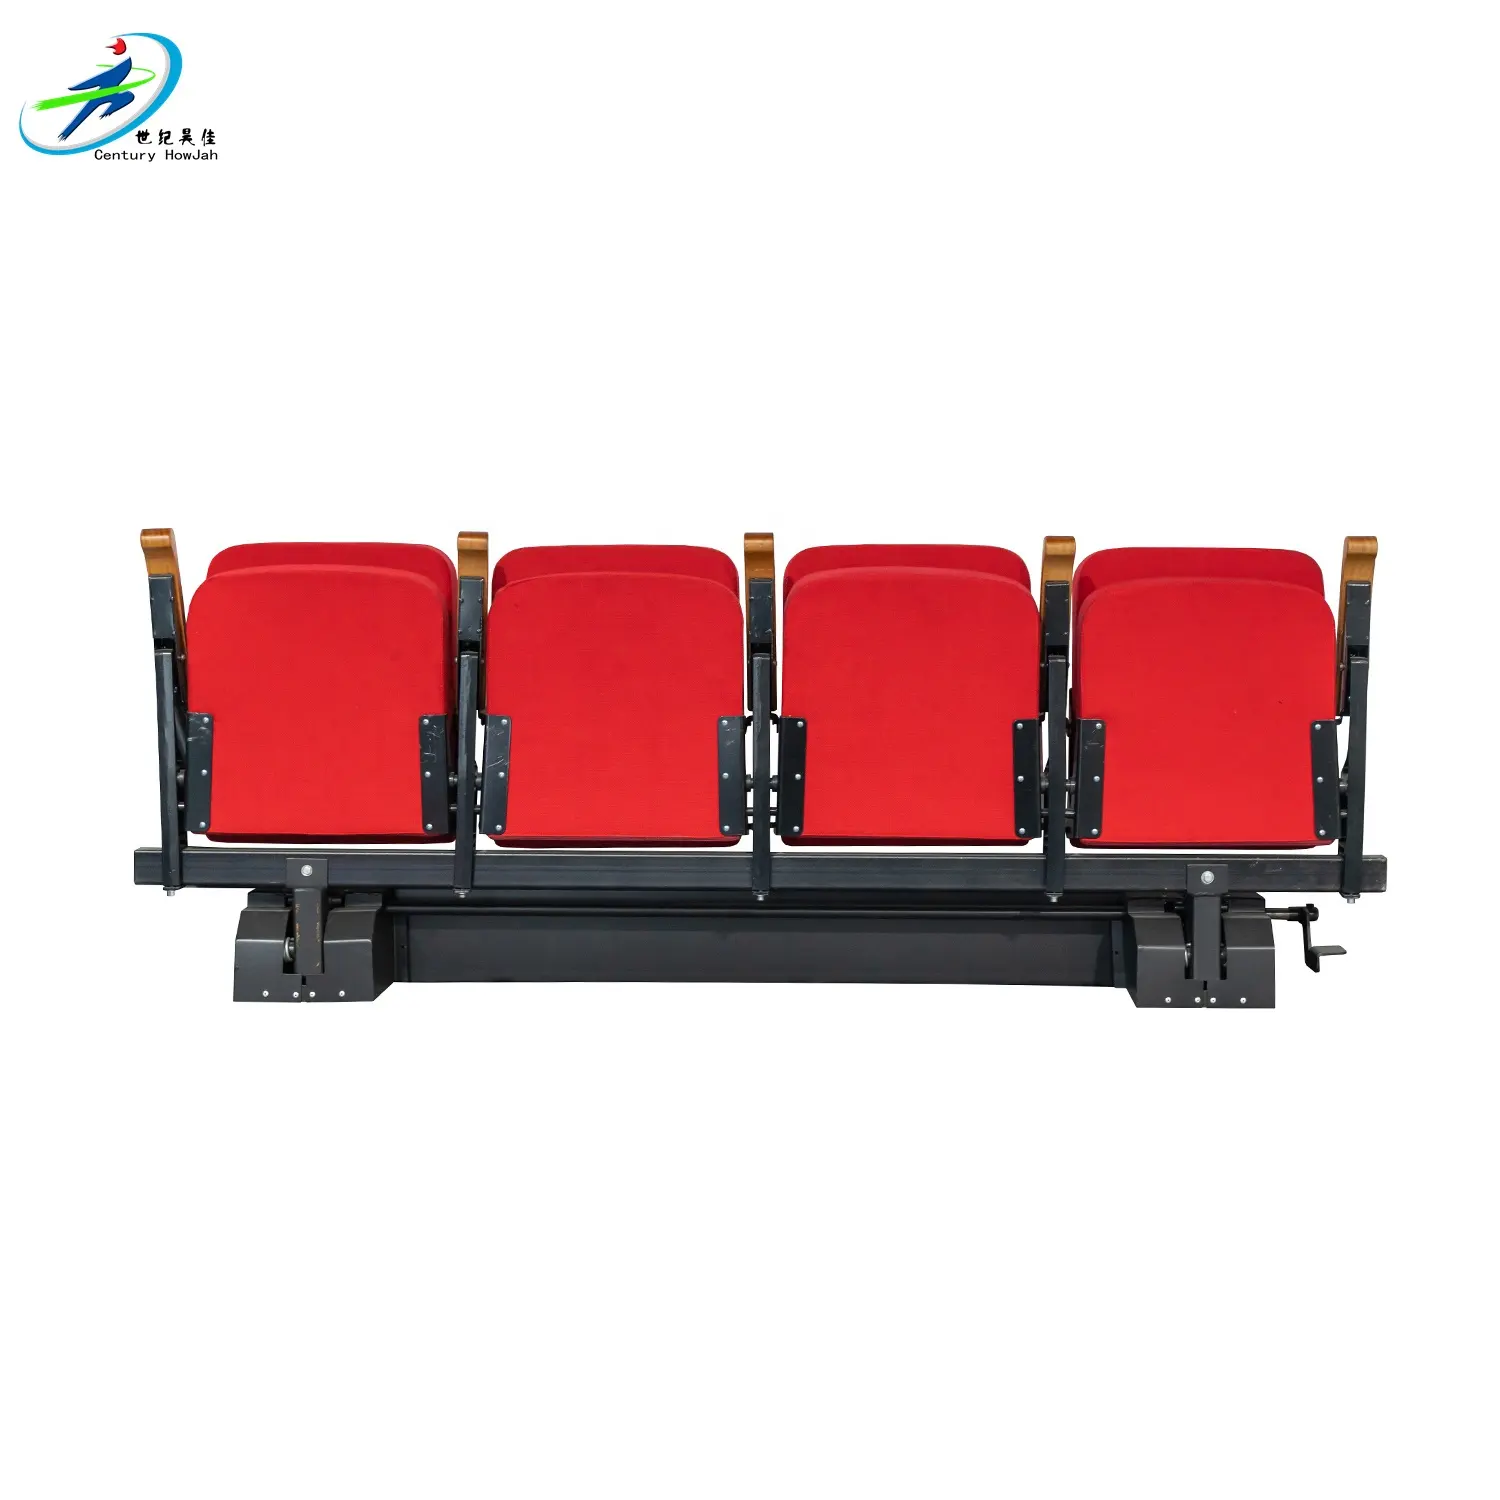 Asientos de teatro baratos a la venta modernos para lugares deportivos, muebles comerciales personalizados, asiento de plástico, silla de comida, bandeja de plástico